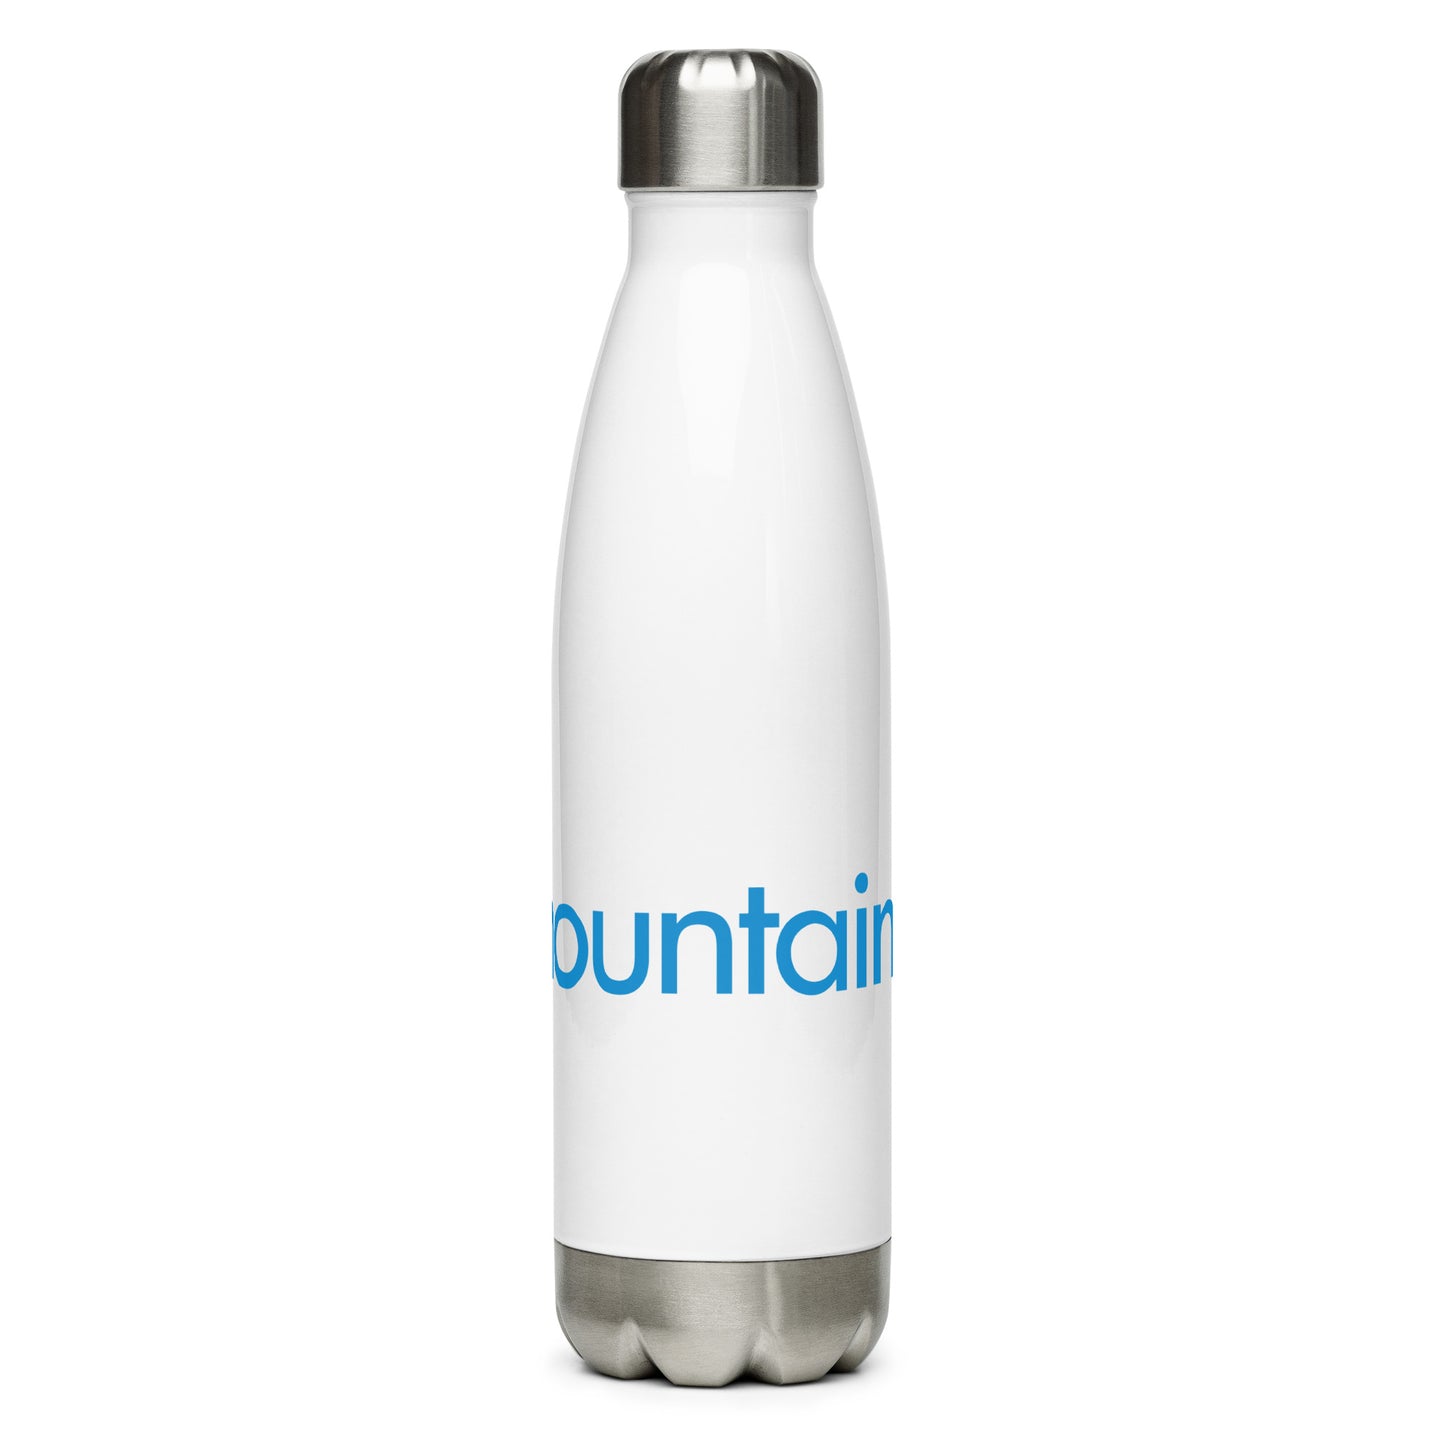 Blue Mountain Water Bottle